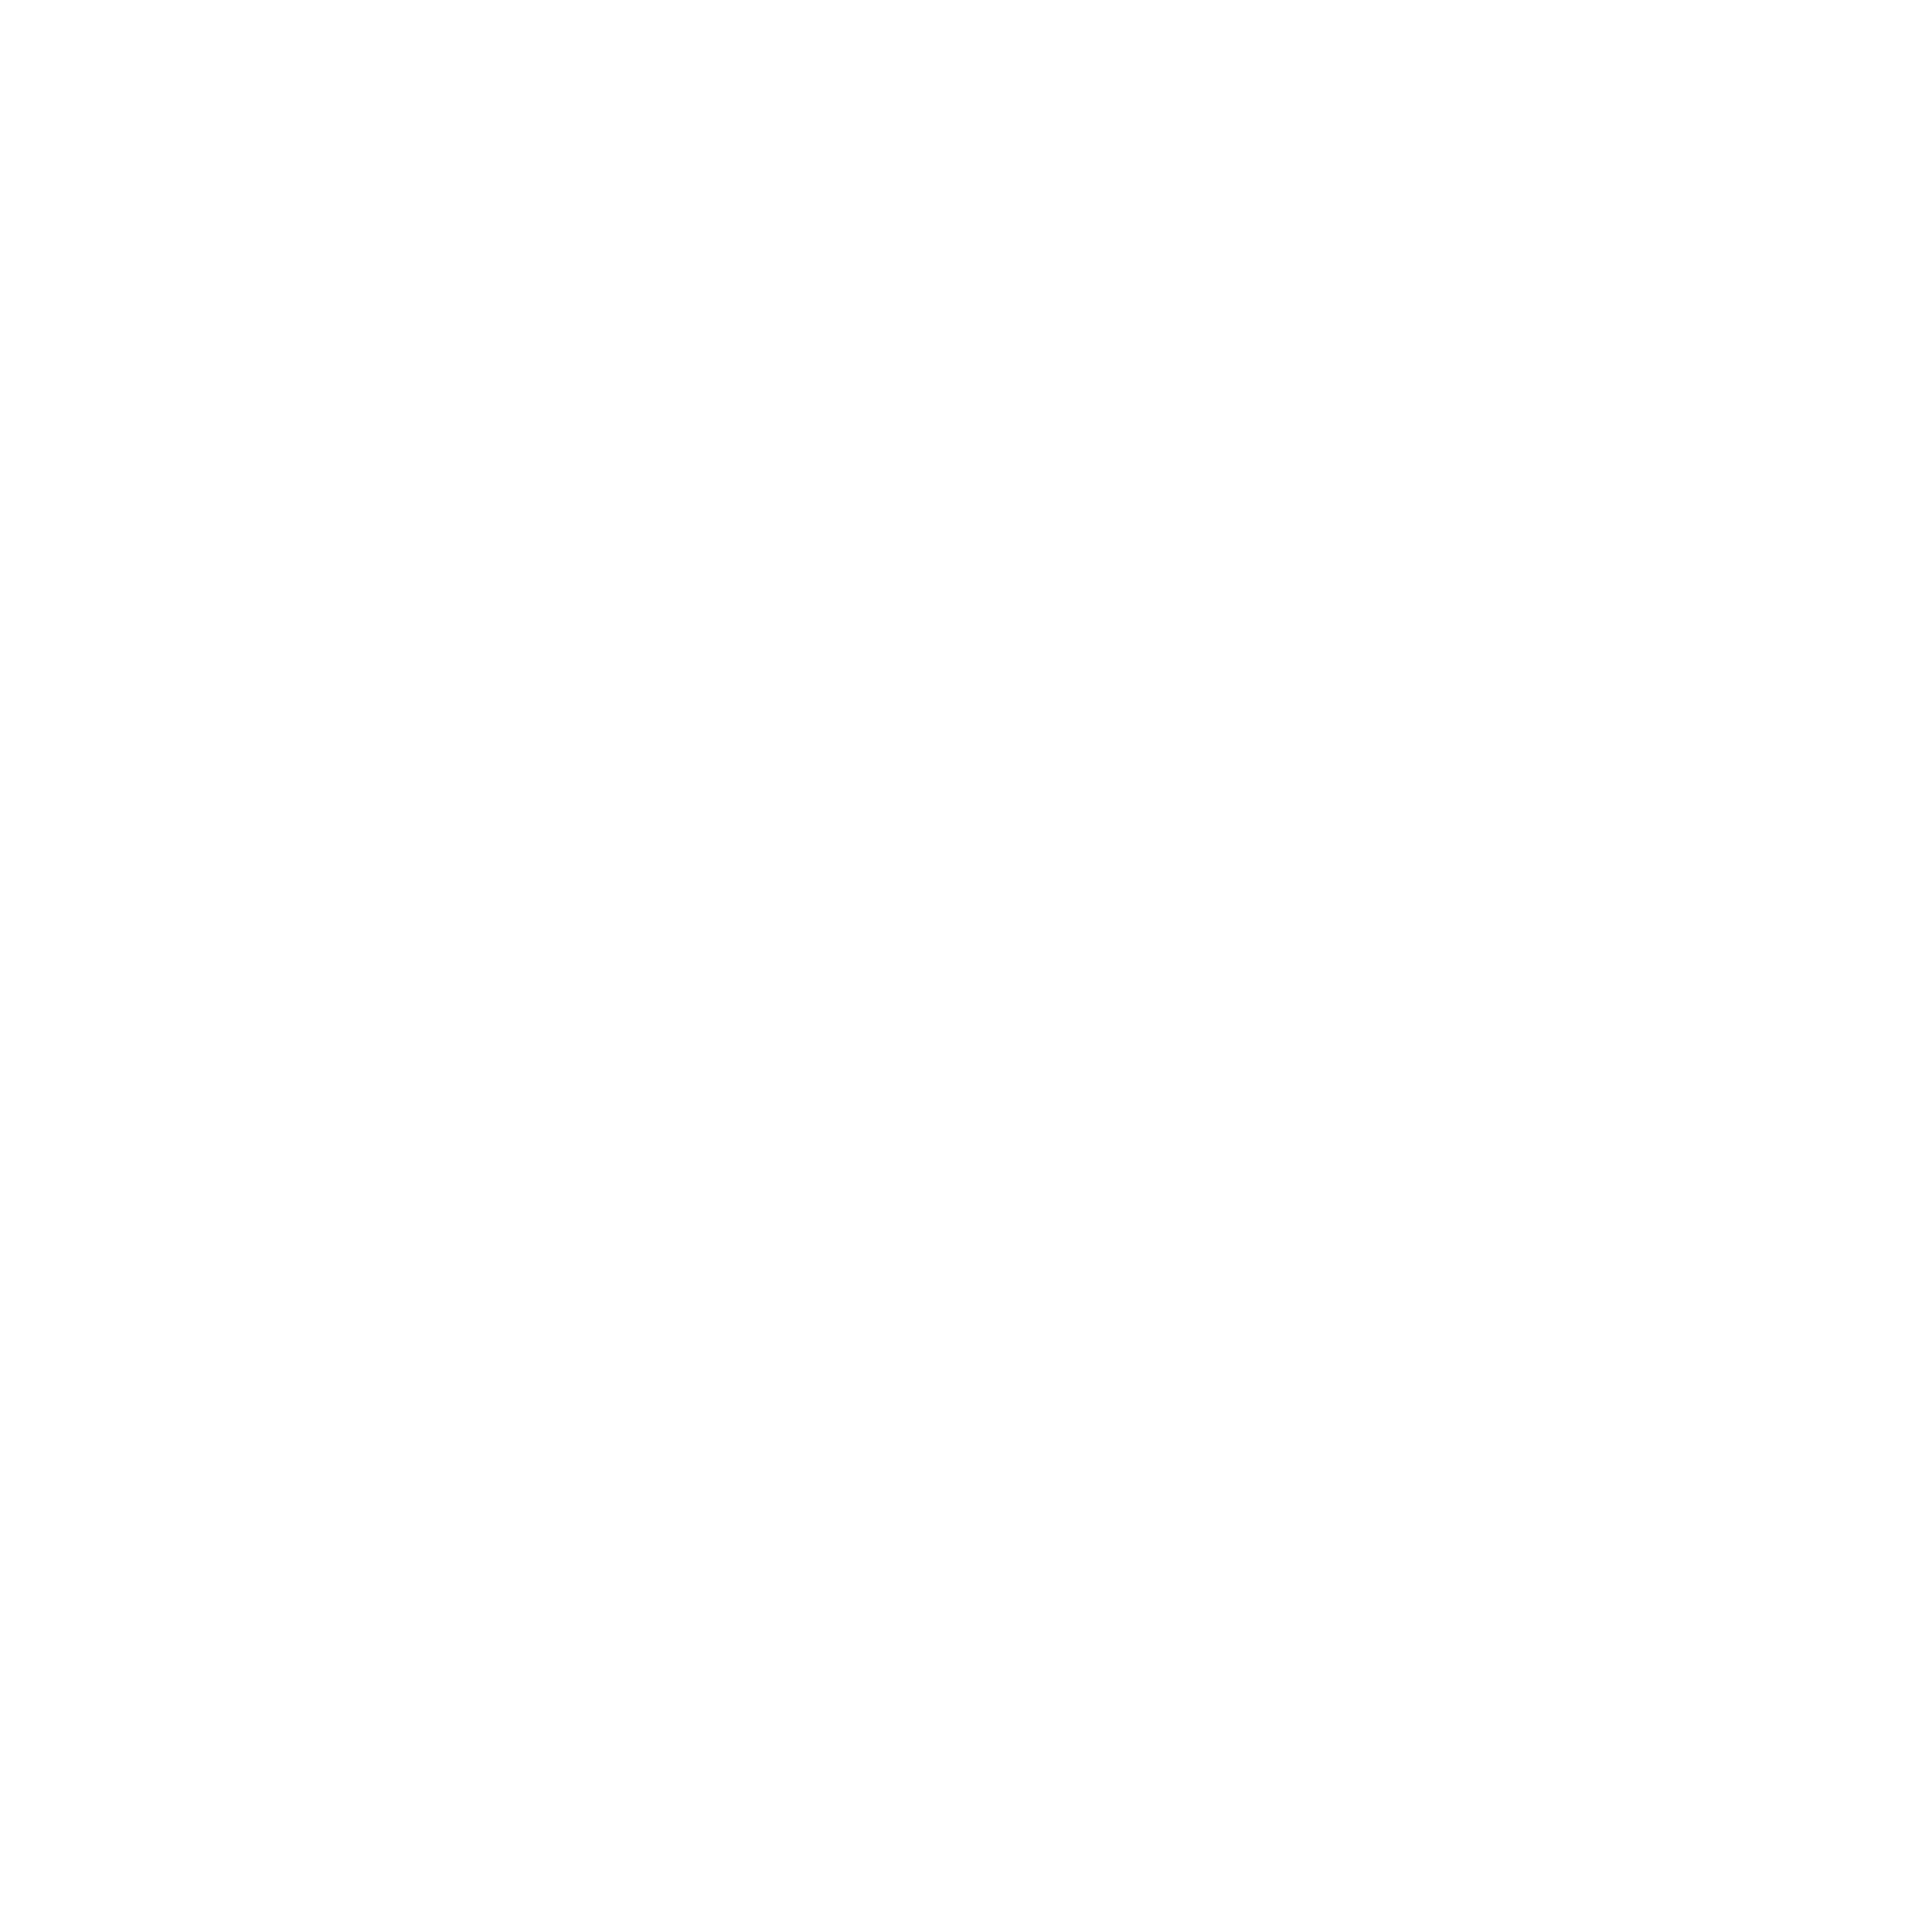 Soundcream-Airstream-Logo-Square-Light